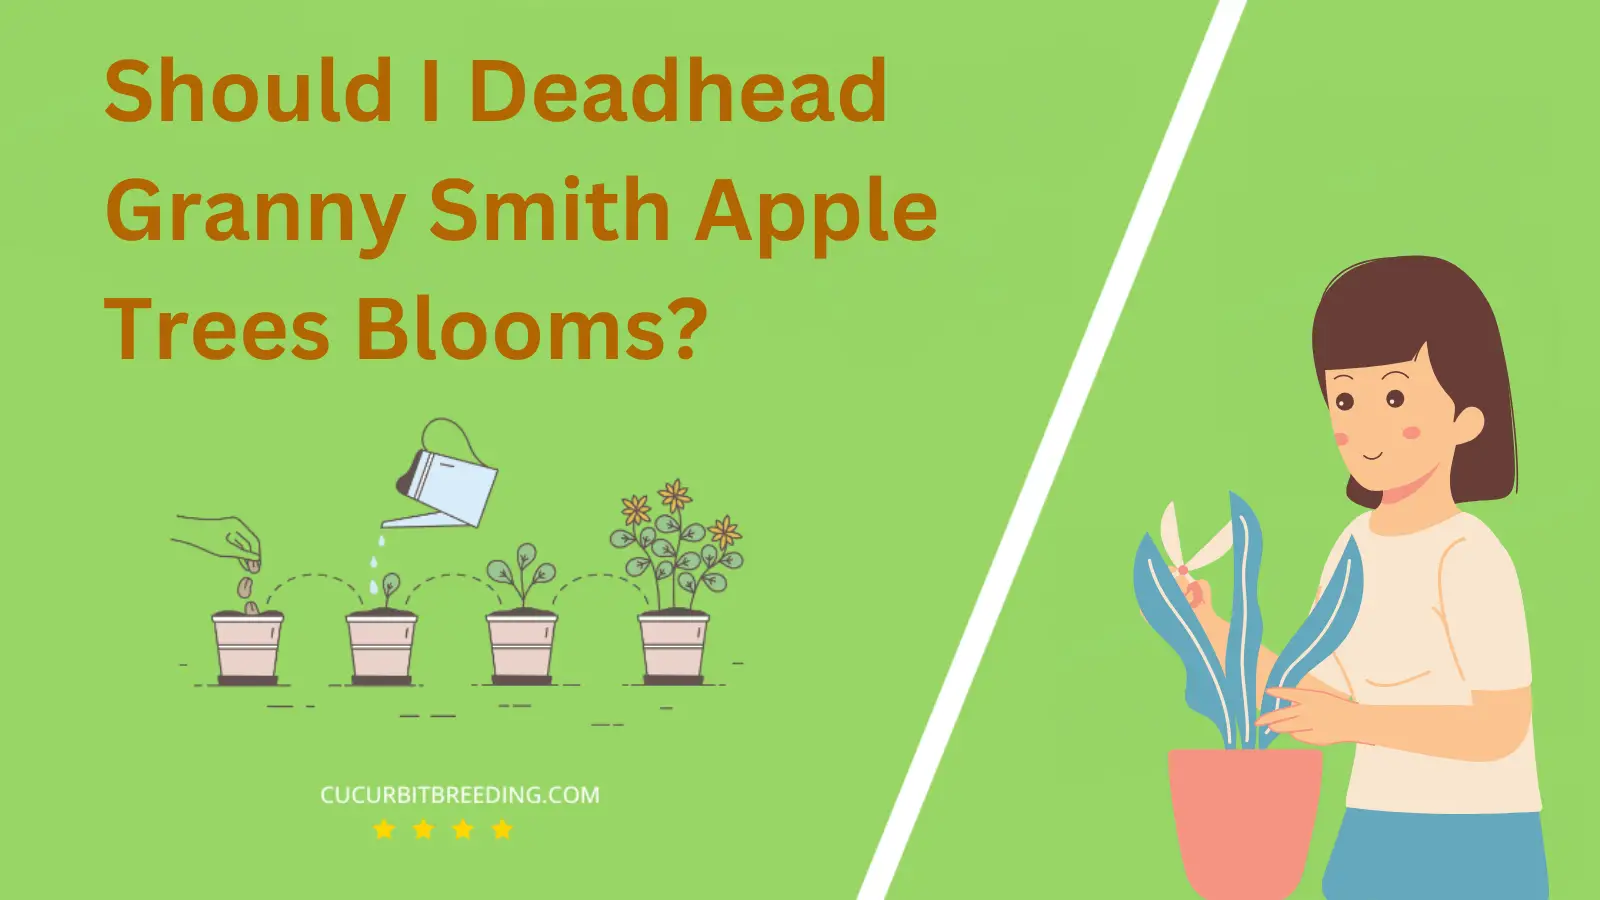 Should I Deadhead Granny Smith Apple Trees Blooms?